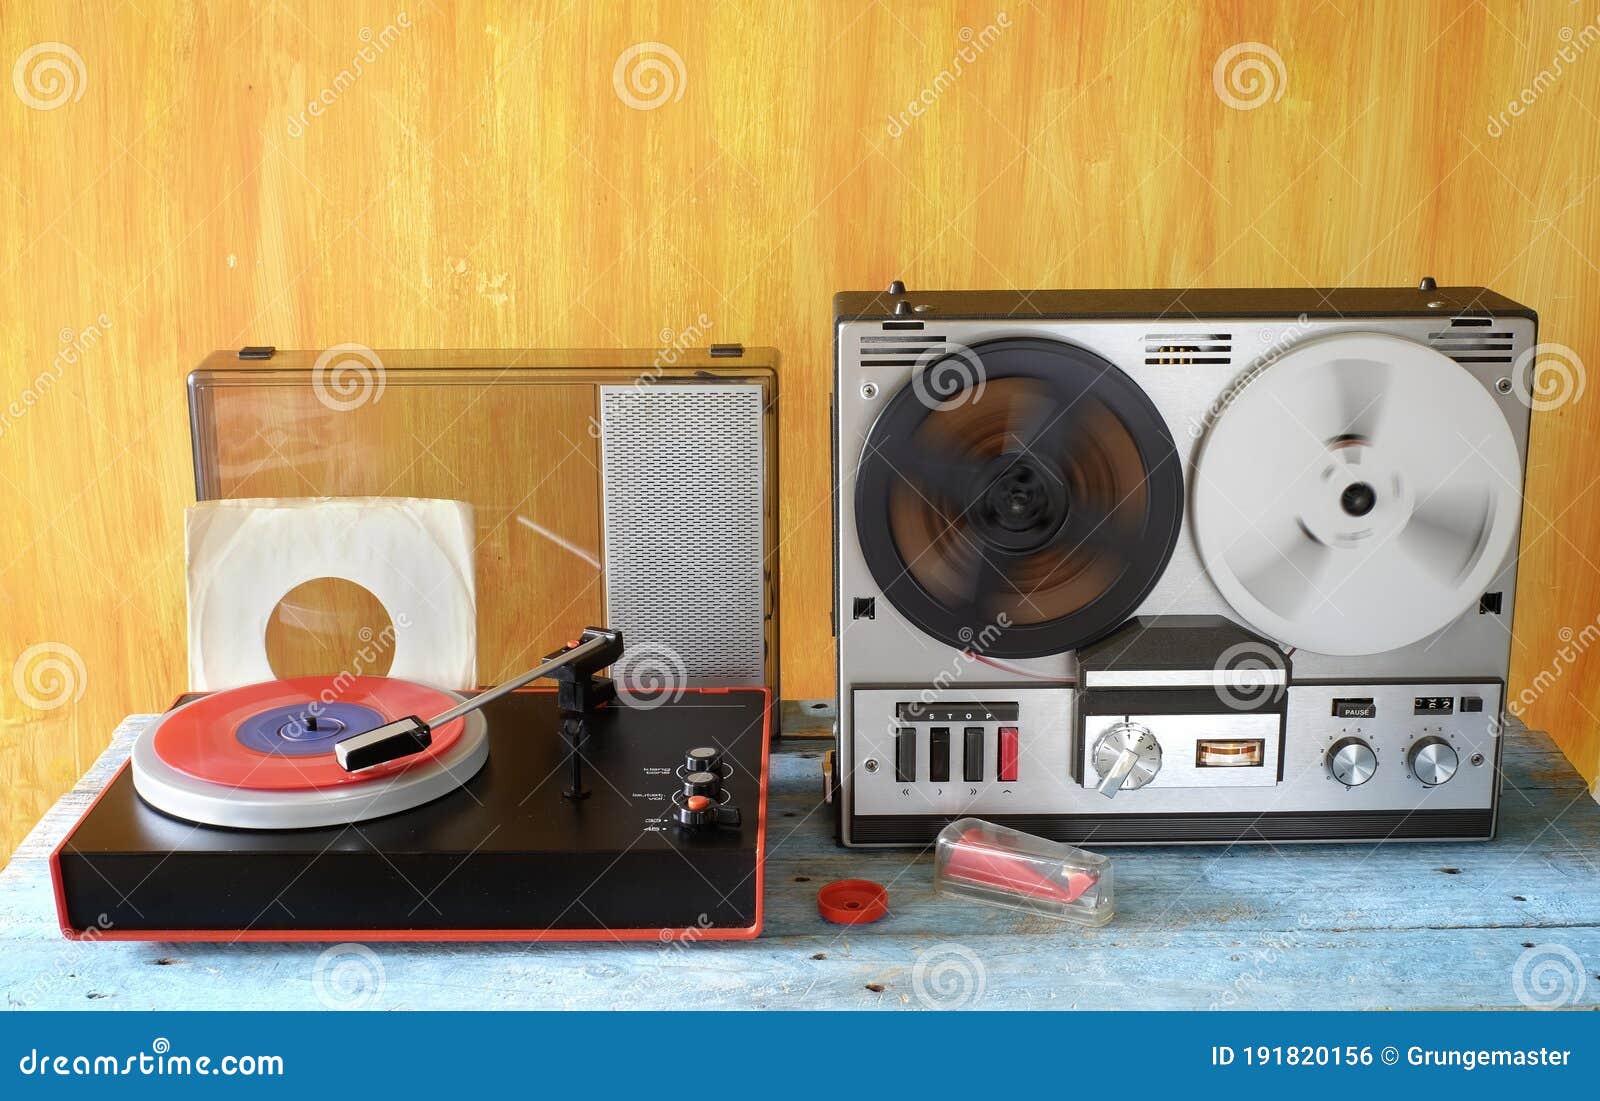 Vintage Reel To Reel Tape Recorder, and Old Turntable Vintage